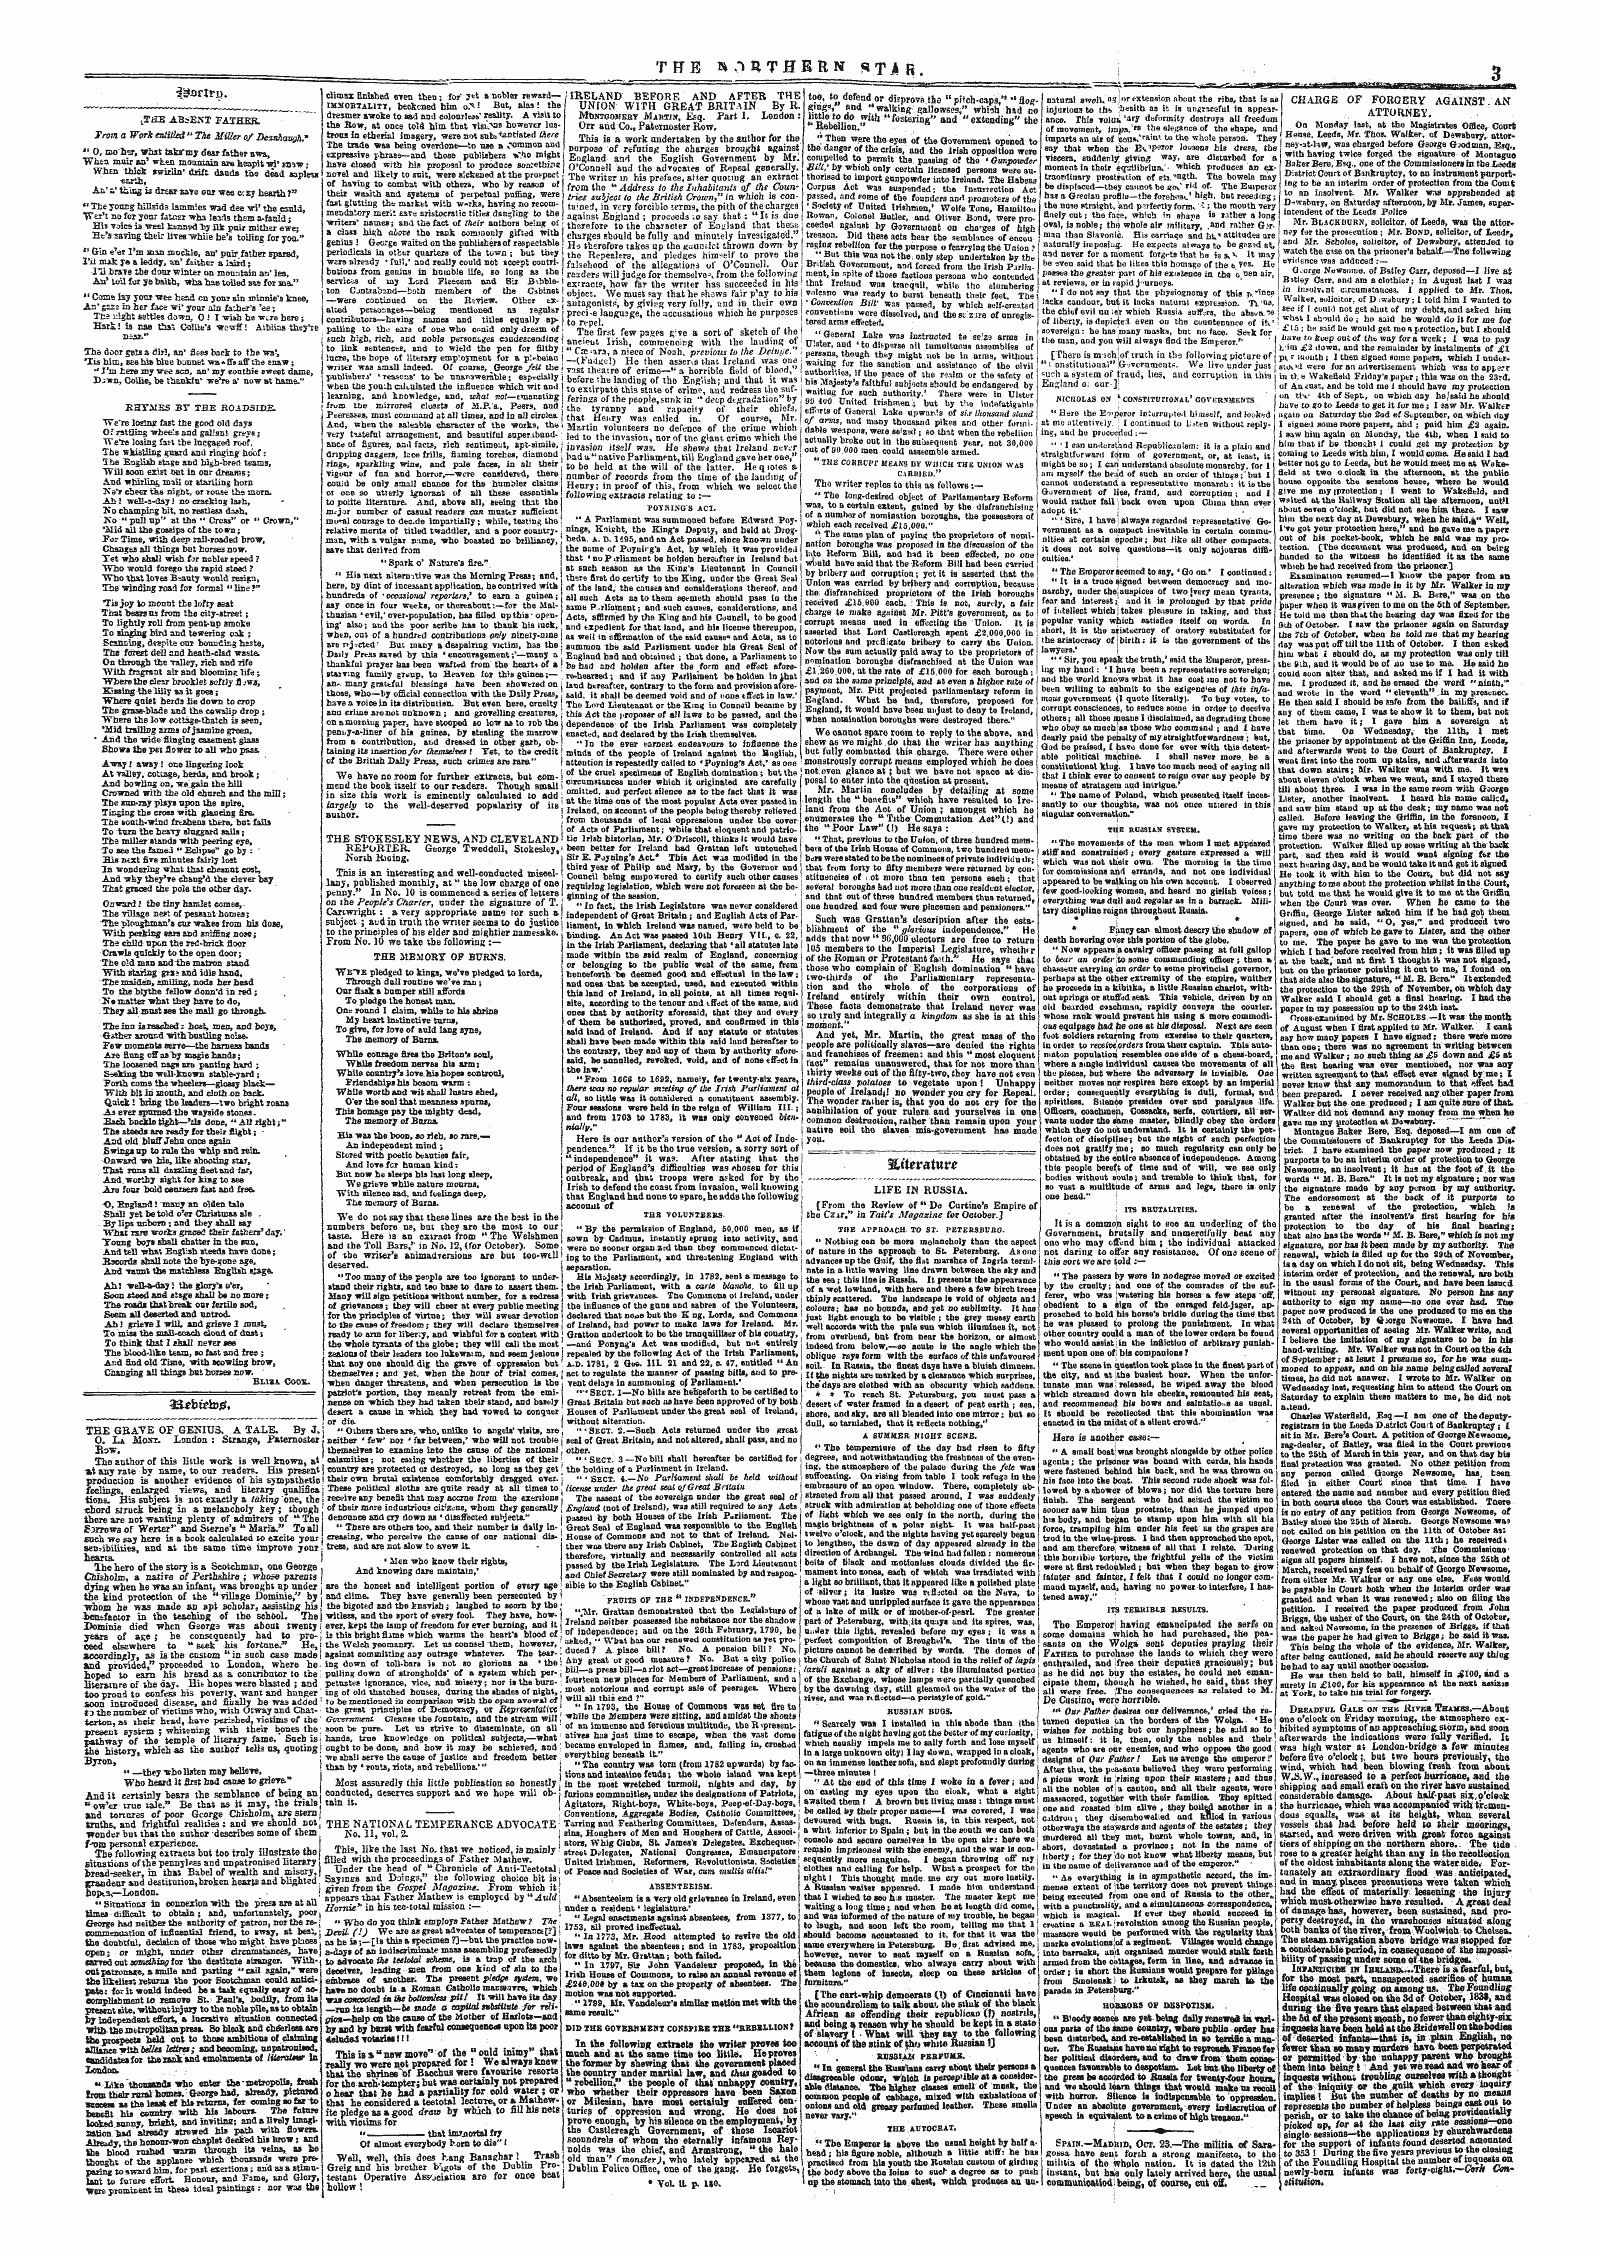 Northern Star (1837-1852): jS F Y, 5th edition - Utterautr*